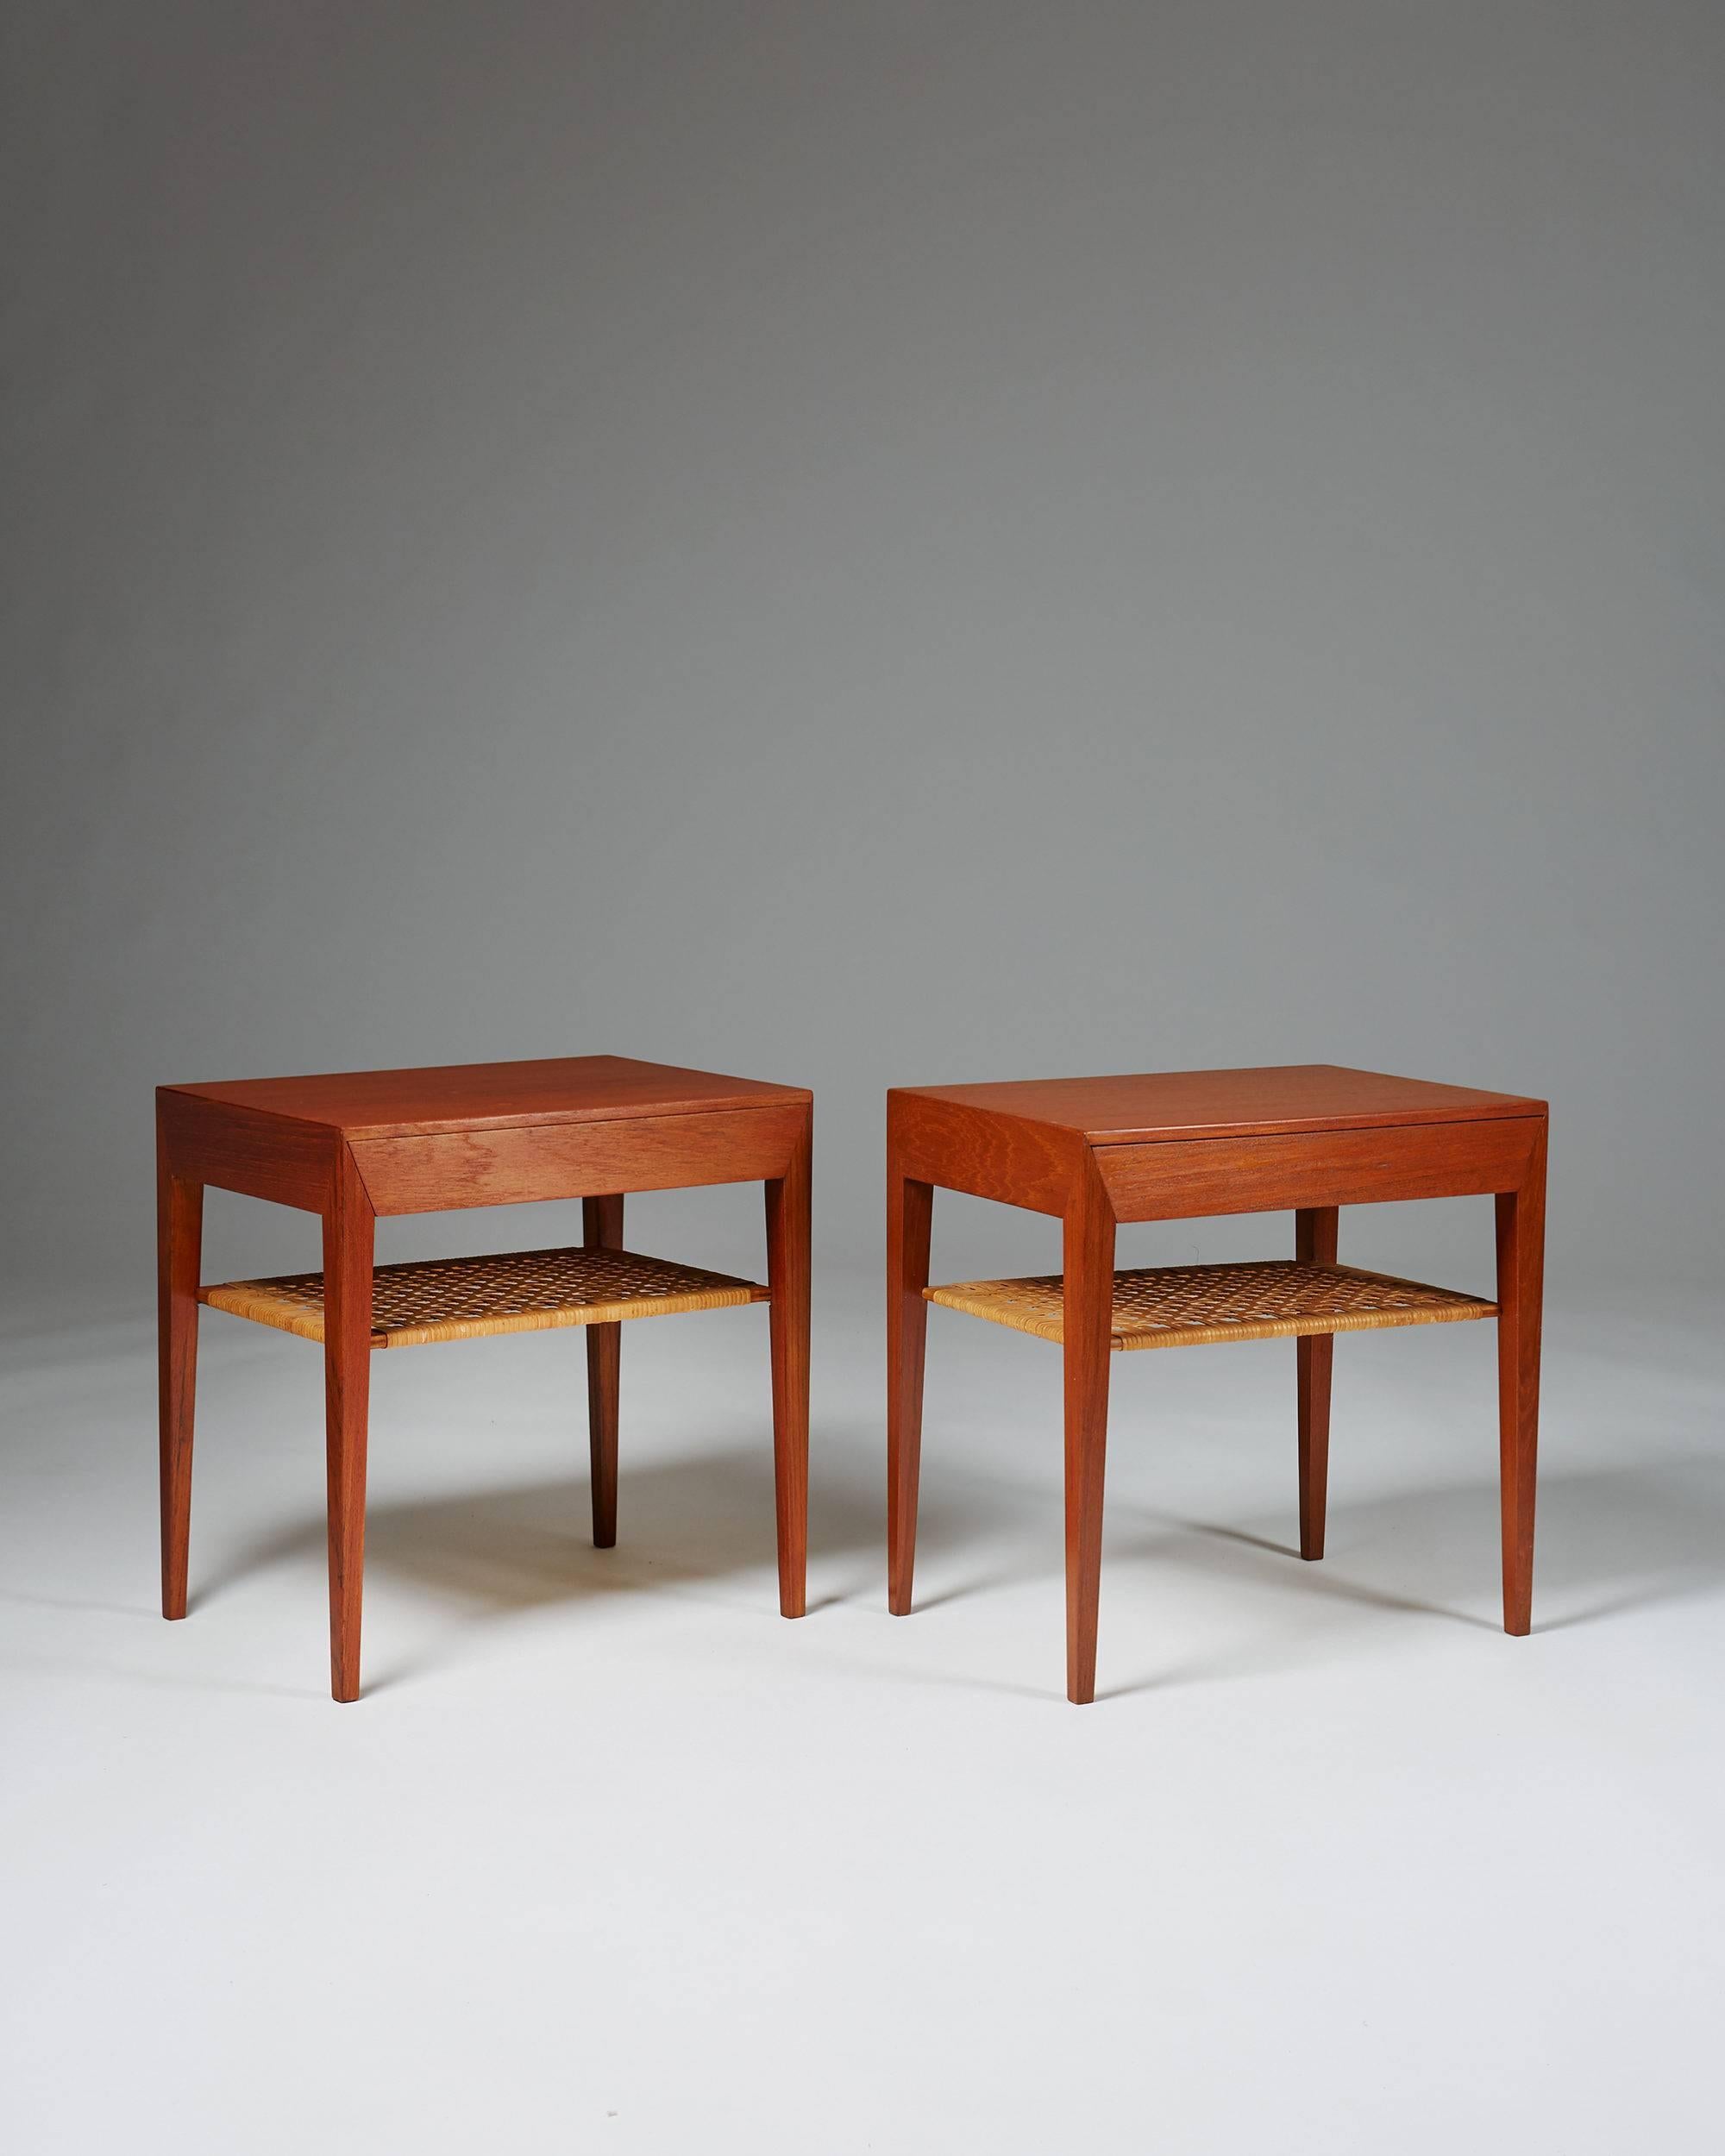 Pair of bedside tables designed by Severin Hansen for Haslev, Denmark, 1950s. Teak and cane.
Measures:
H 50 cm/ 19 3/4''
L 50 cm/ 19 3/4''
D 35 cm/ 13 3/4''.
 